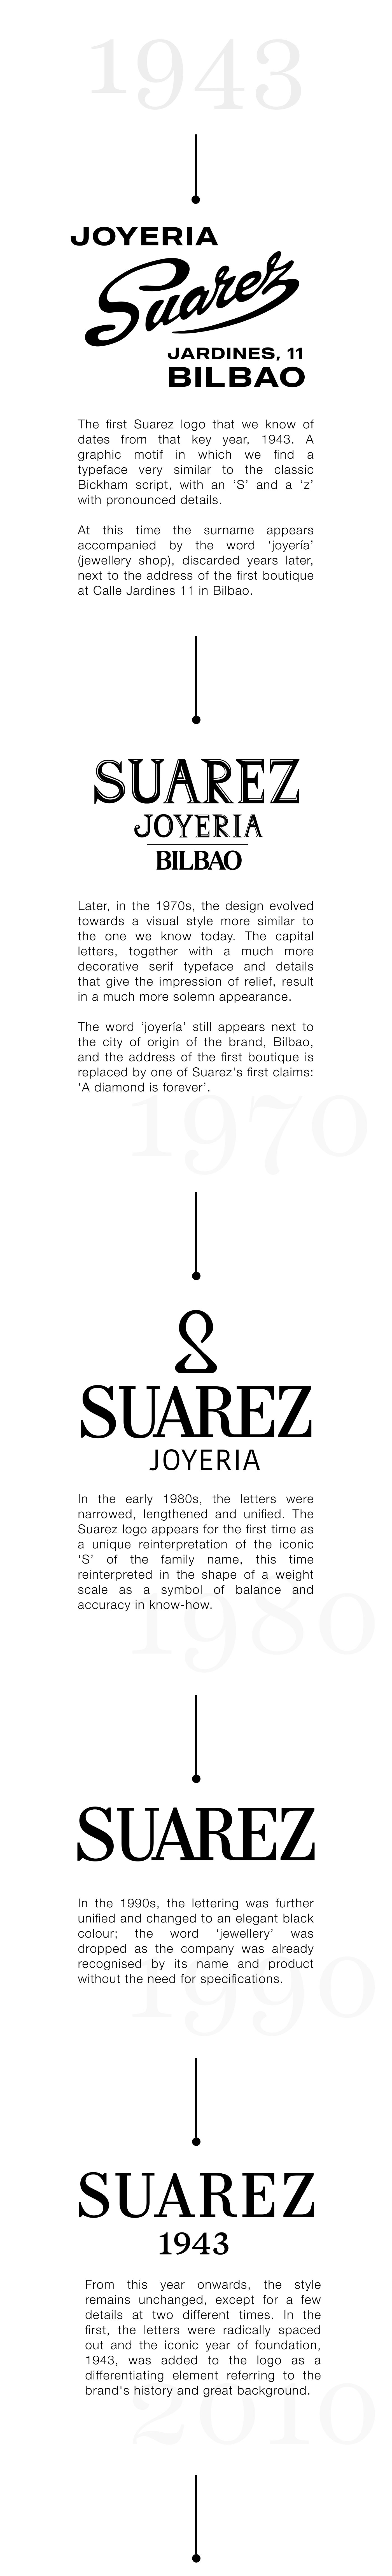 Logo Suarez 